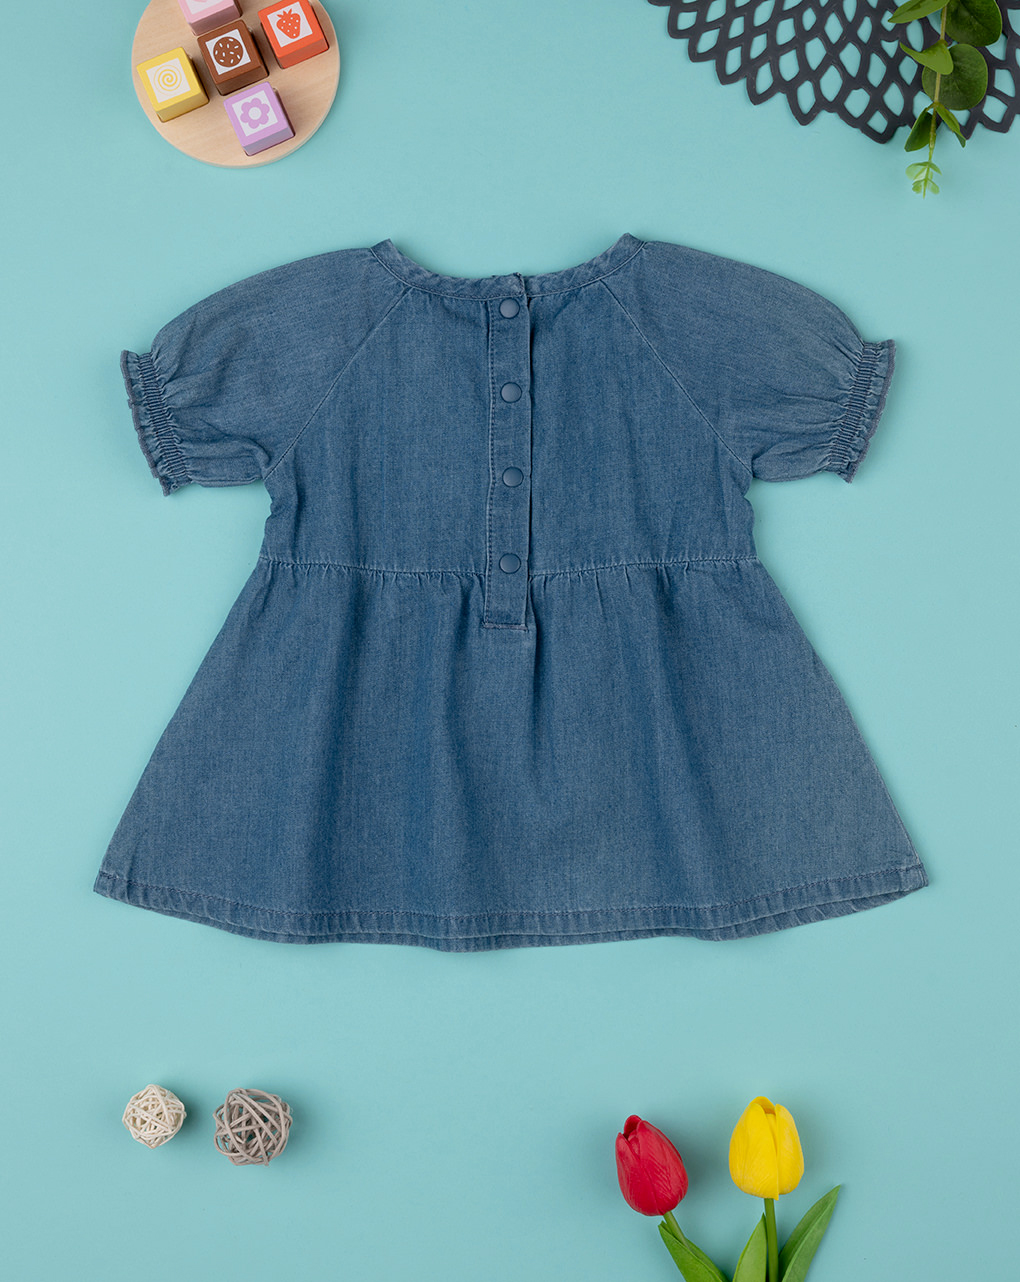 βρεφική τζιν μπλούζα μπλε με σφηκοφωλιά για κορίτσι - Prénatal